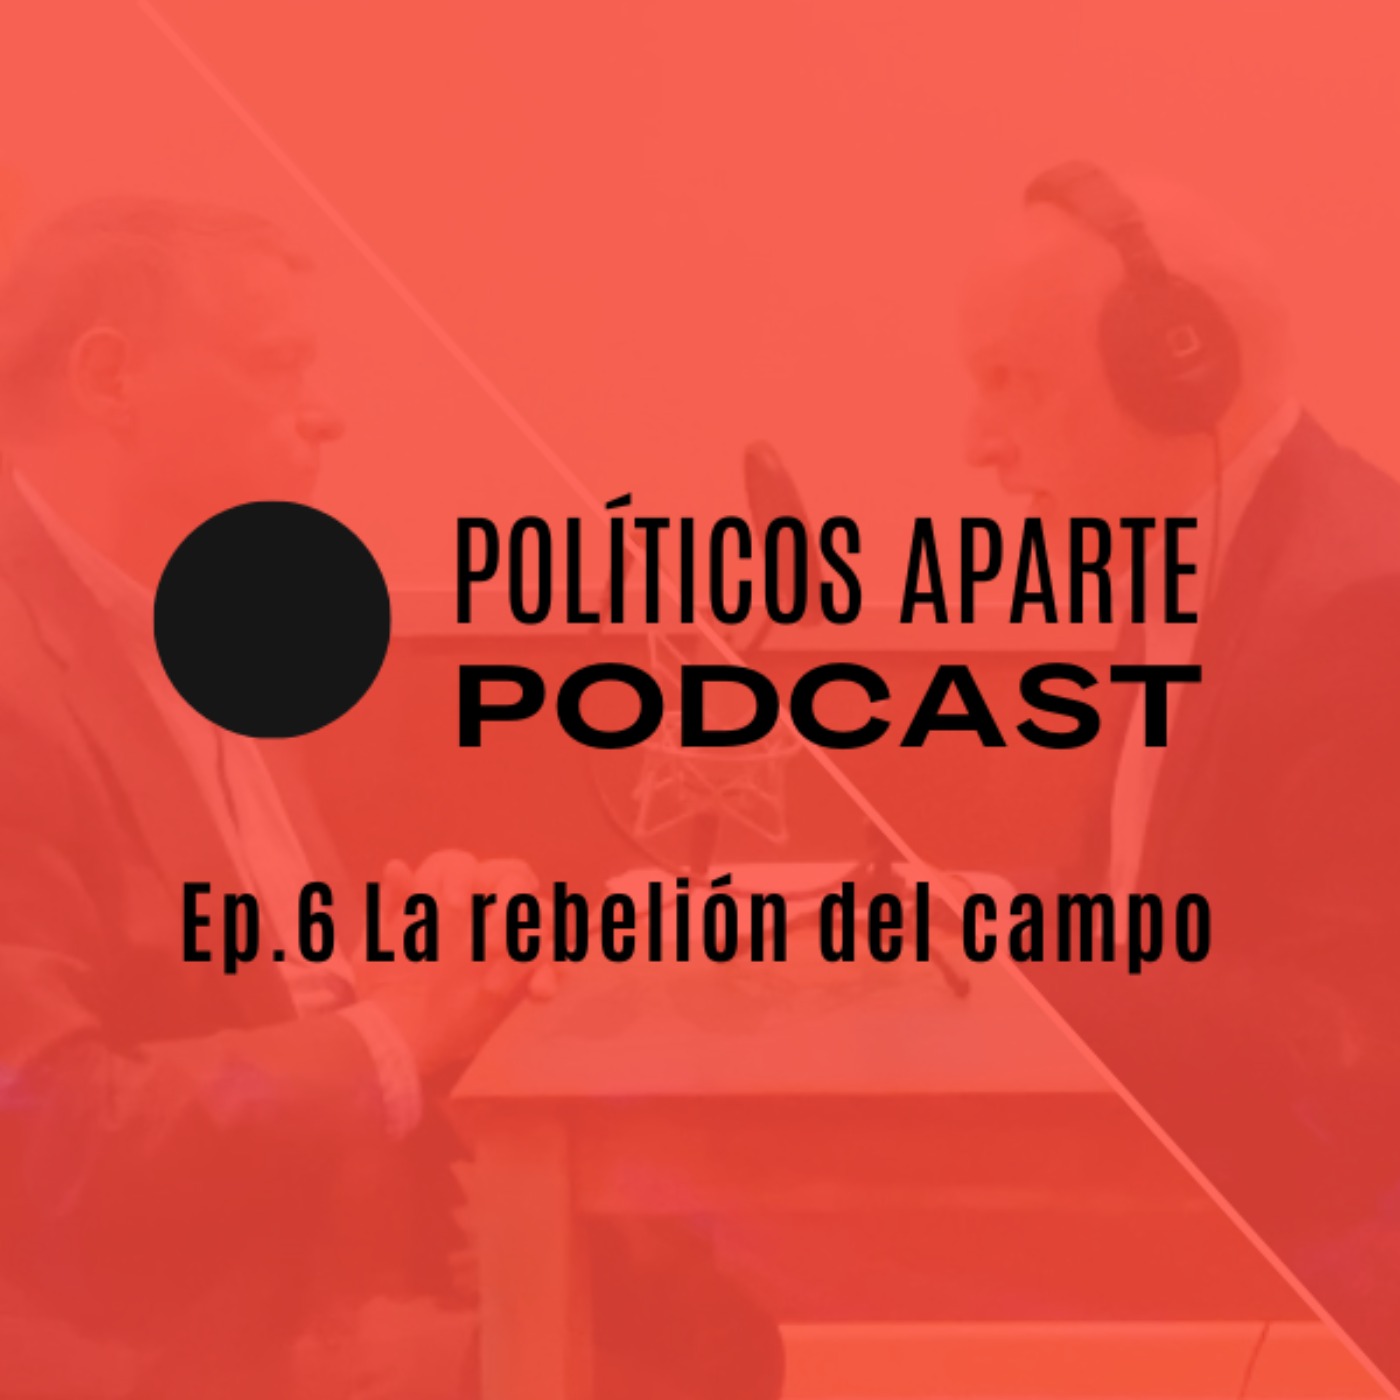 Ep.6 La rebelión del campo, los beneficios récord de la banca y las elecciones gallegas